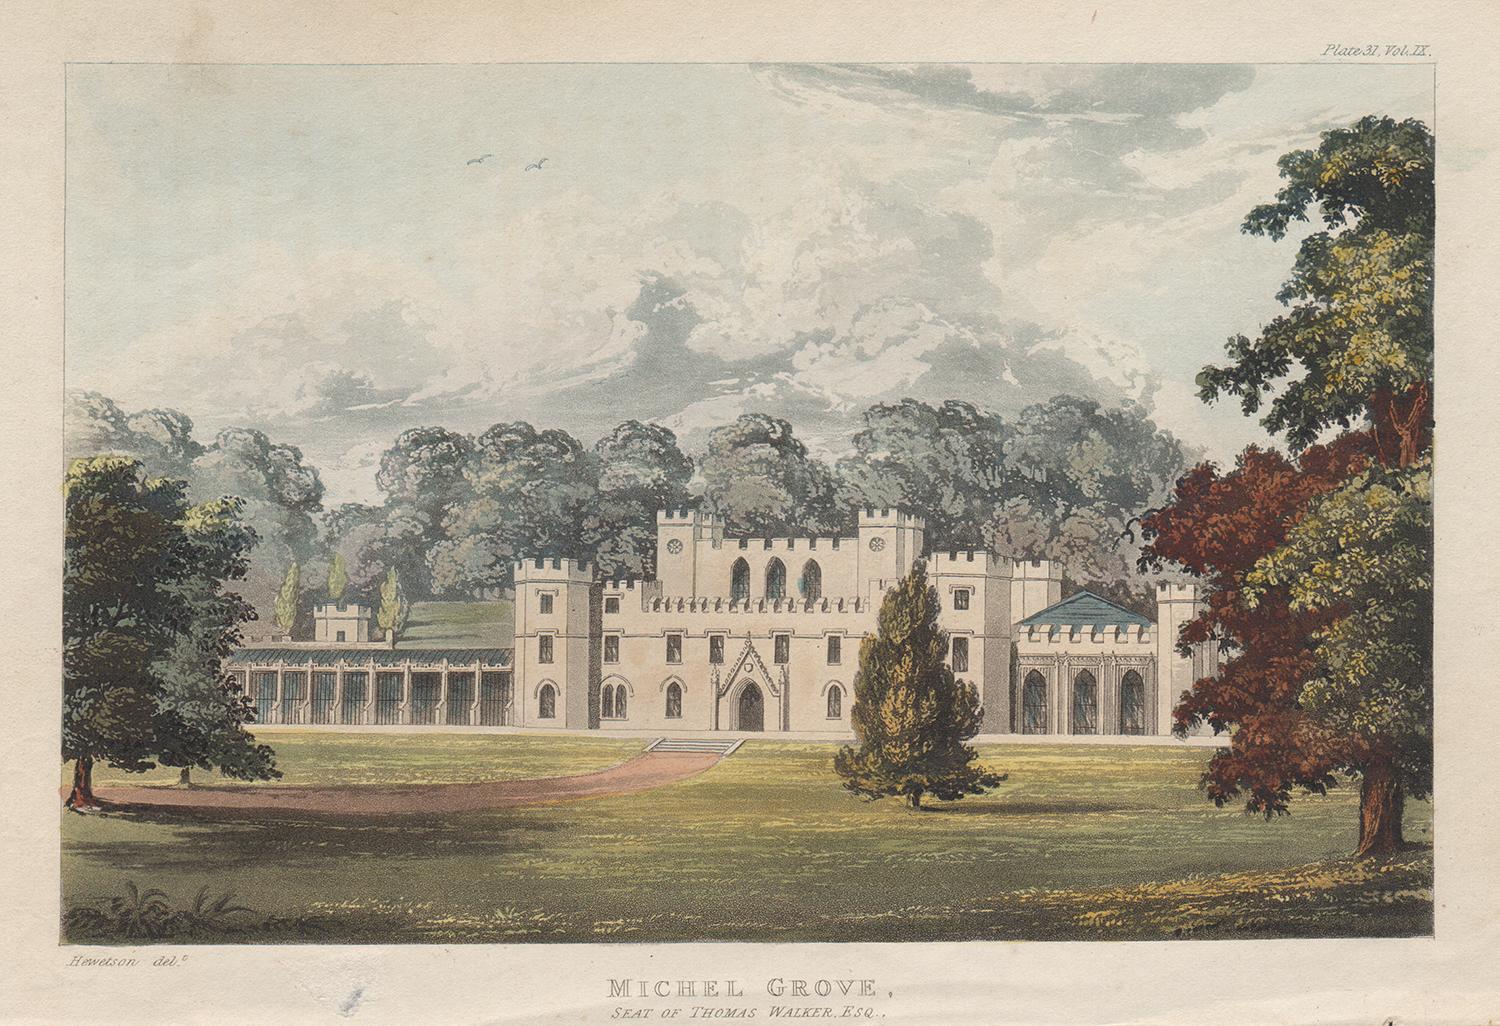 Michel Grove, Sussex, englische Regency-Landschaftshausfarbe in Aquatinta, 1818